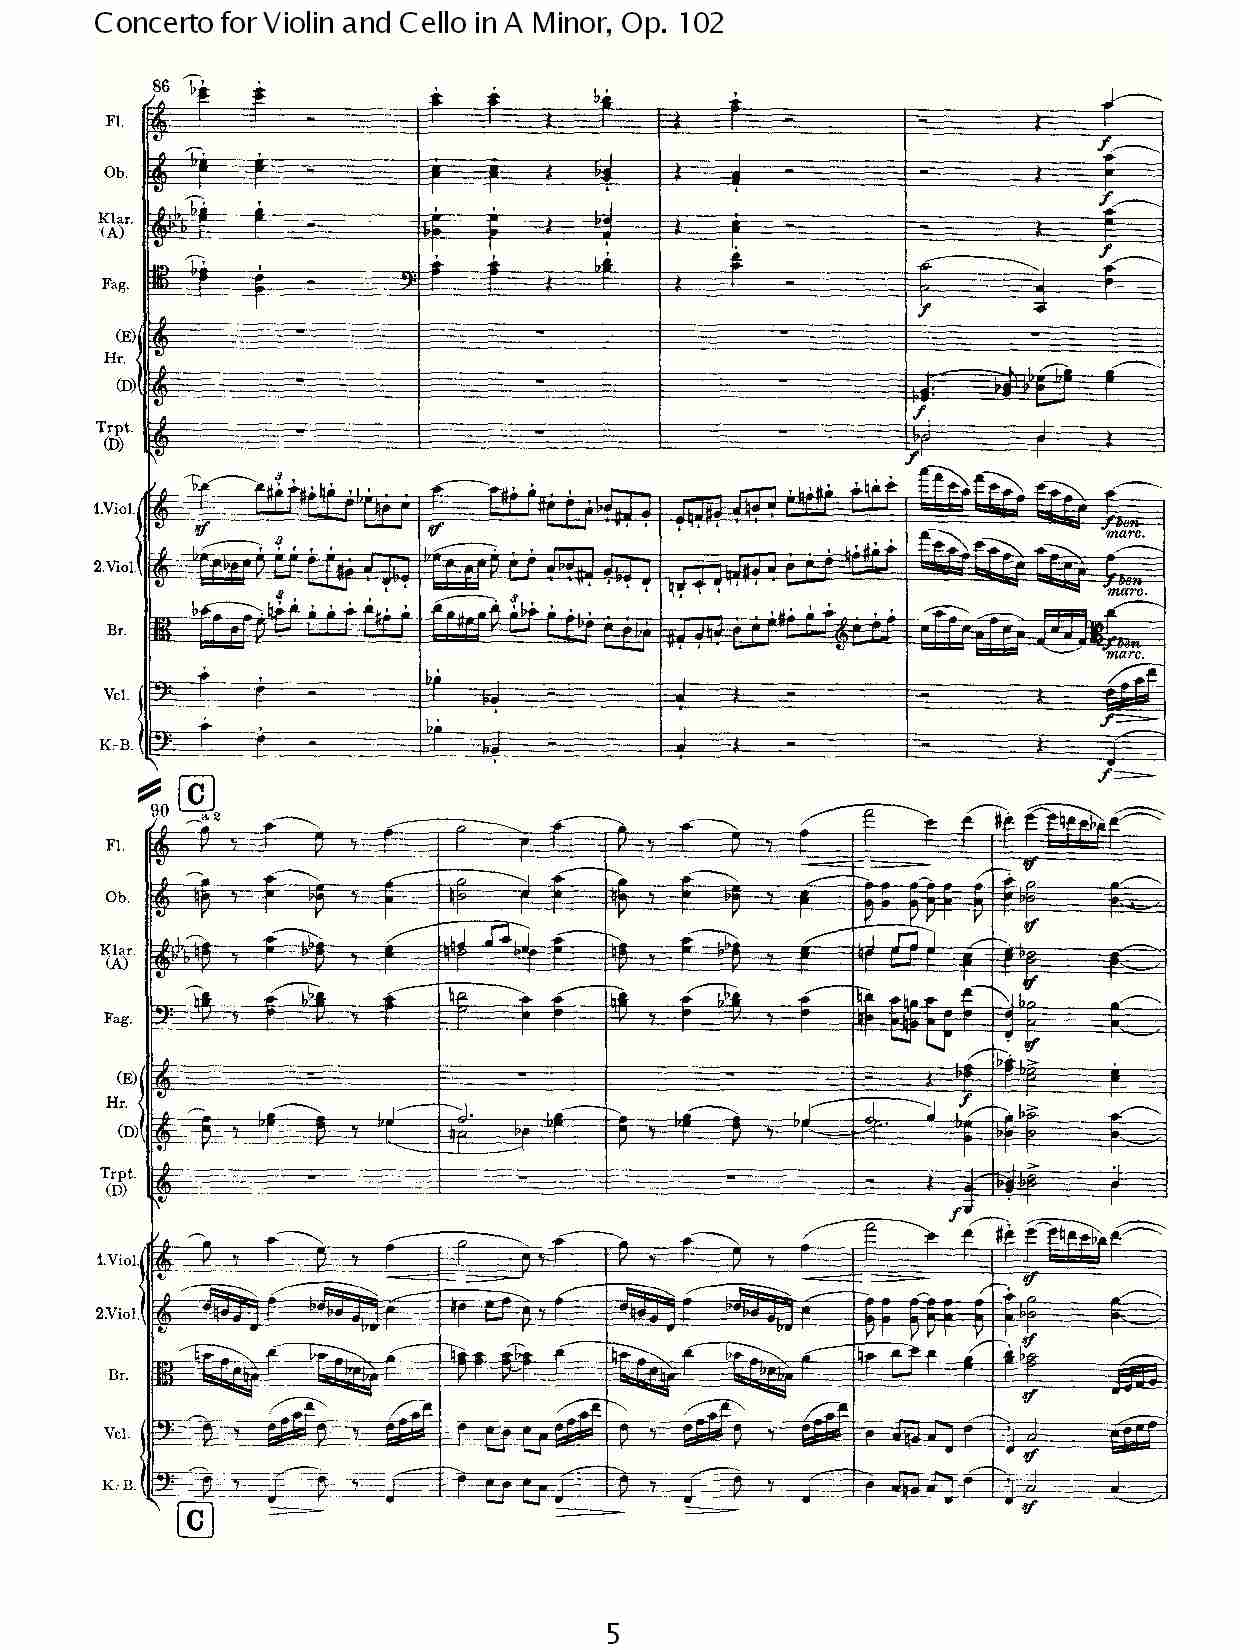 A小调小提琴与大提琴协奏曲, Op.102第一乐章（一）总谱（图6）